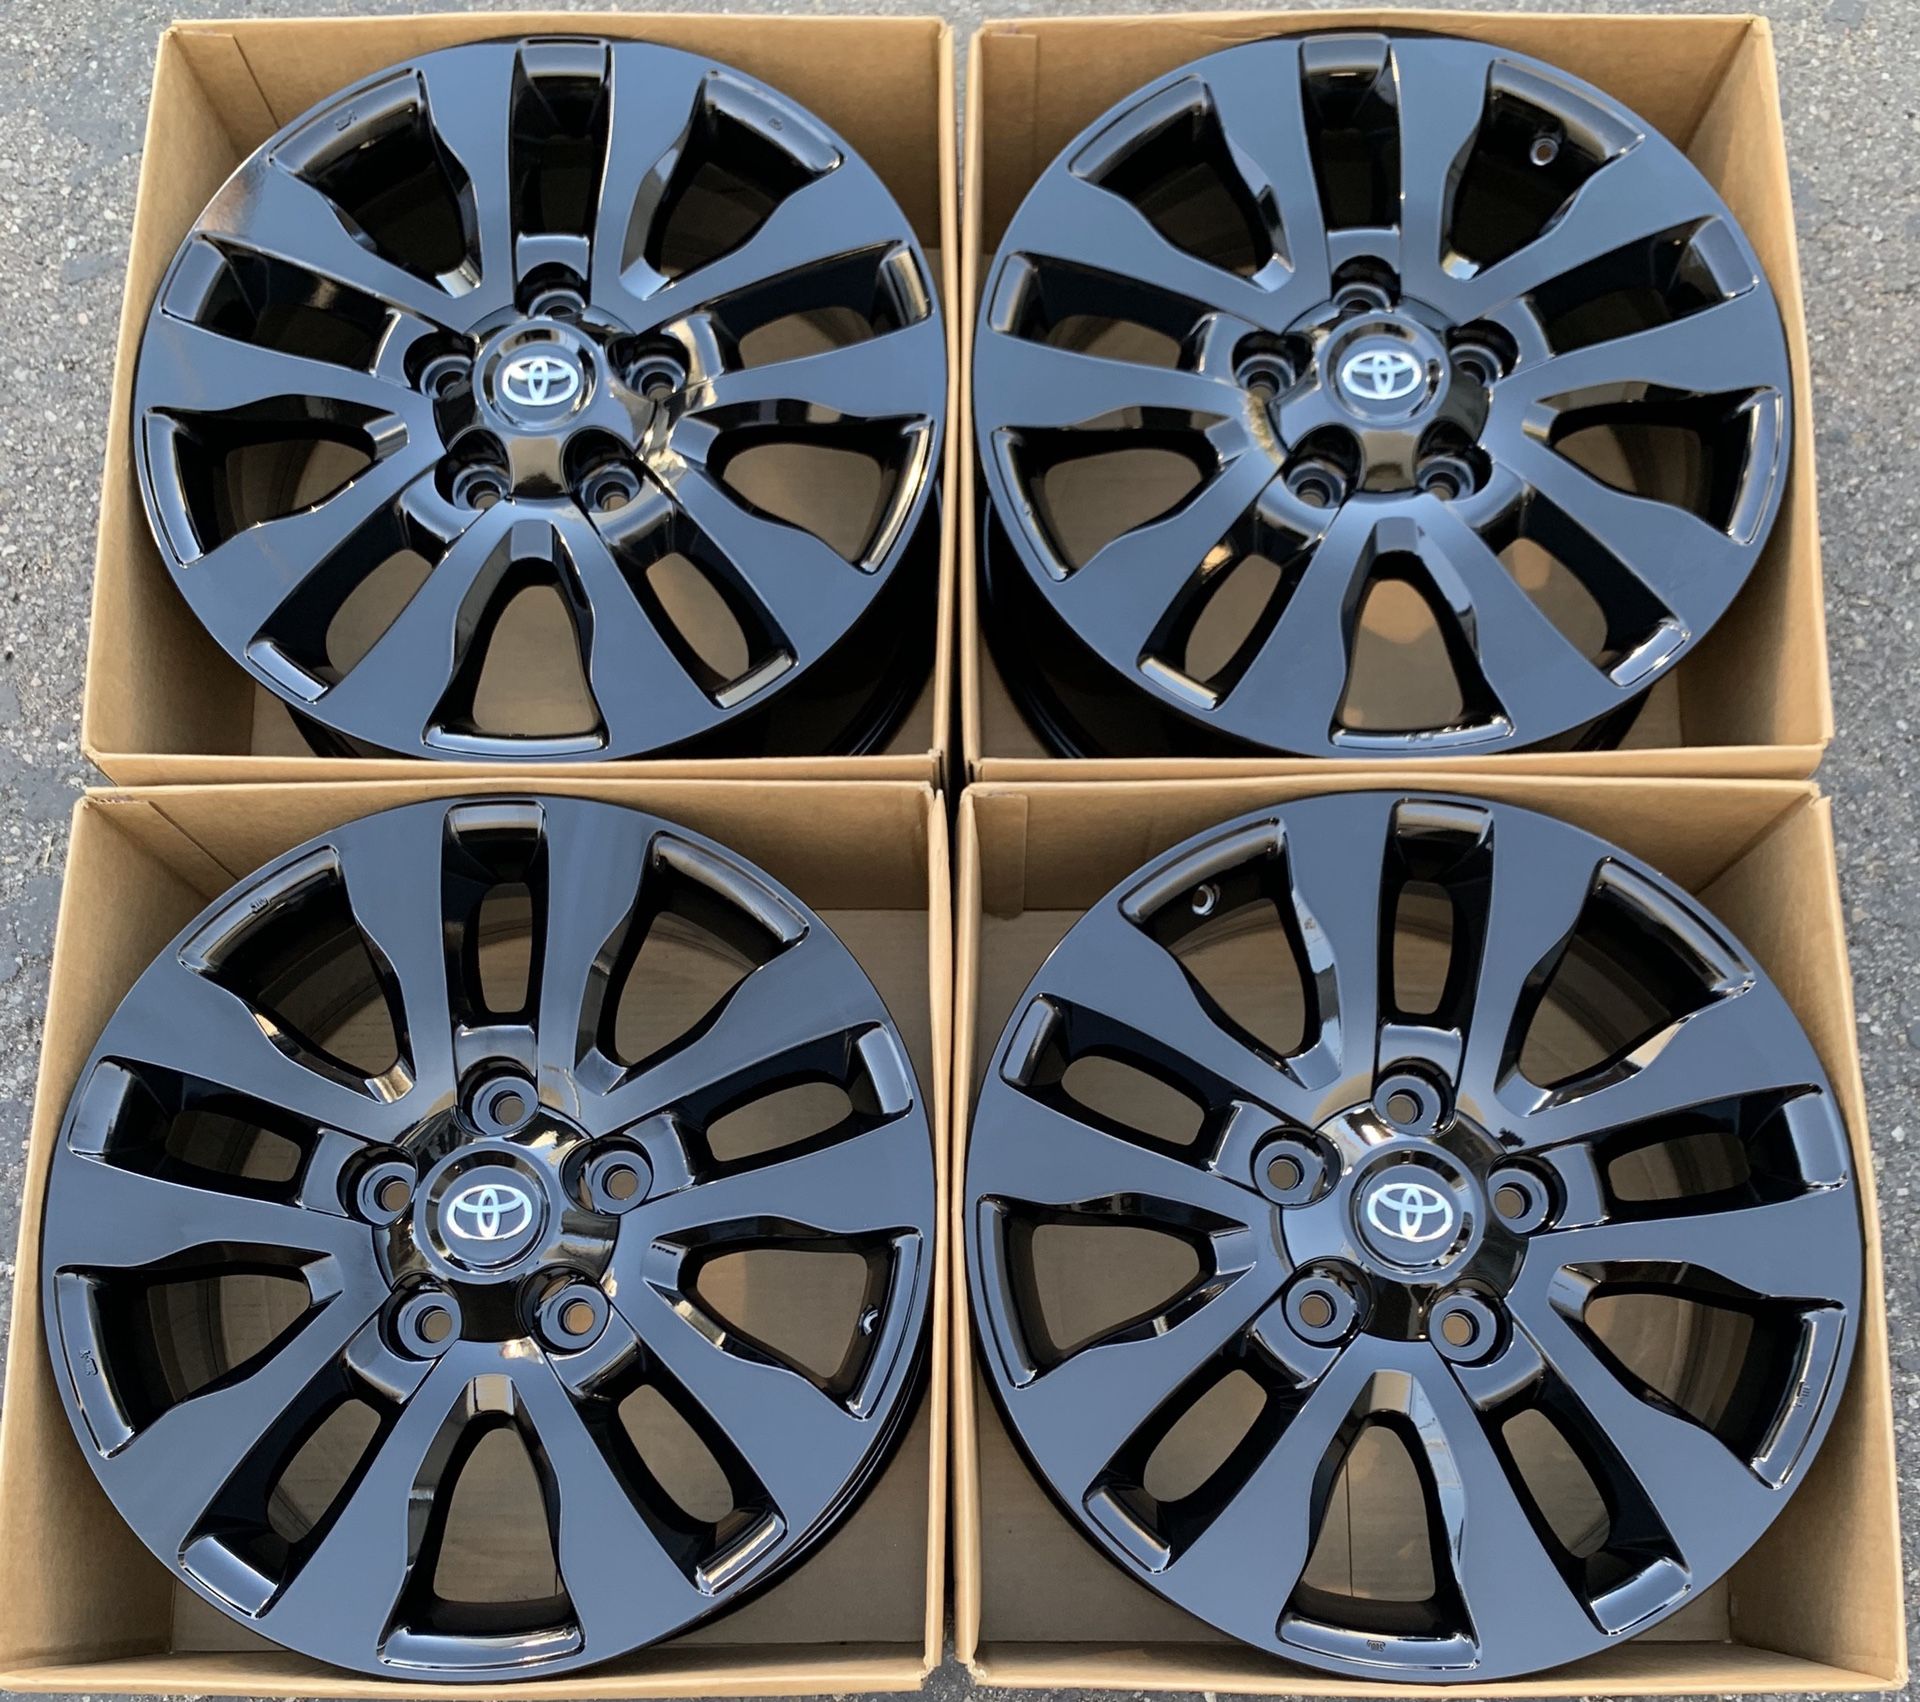 20” Toyota Tundra factory wheels rims gloss black new